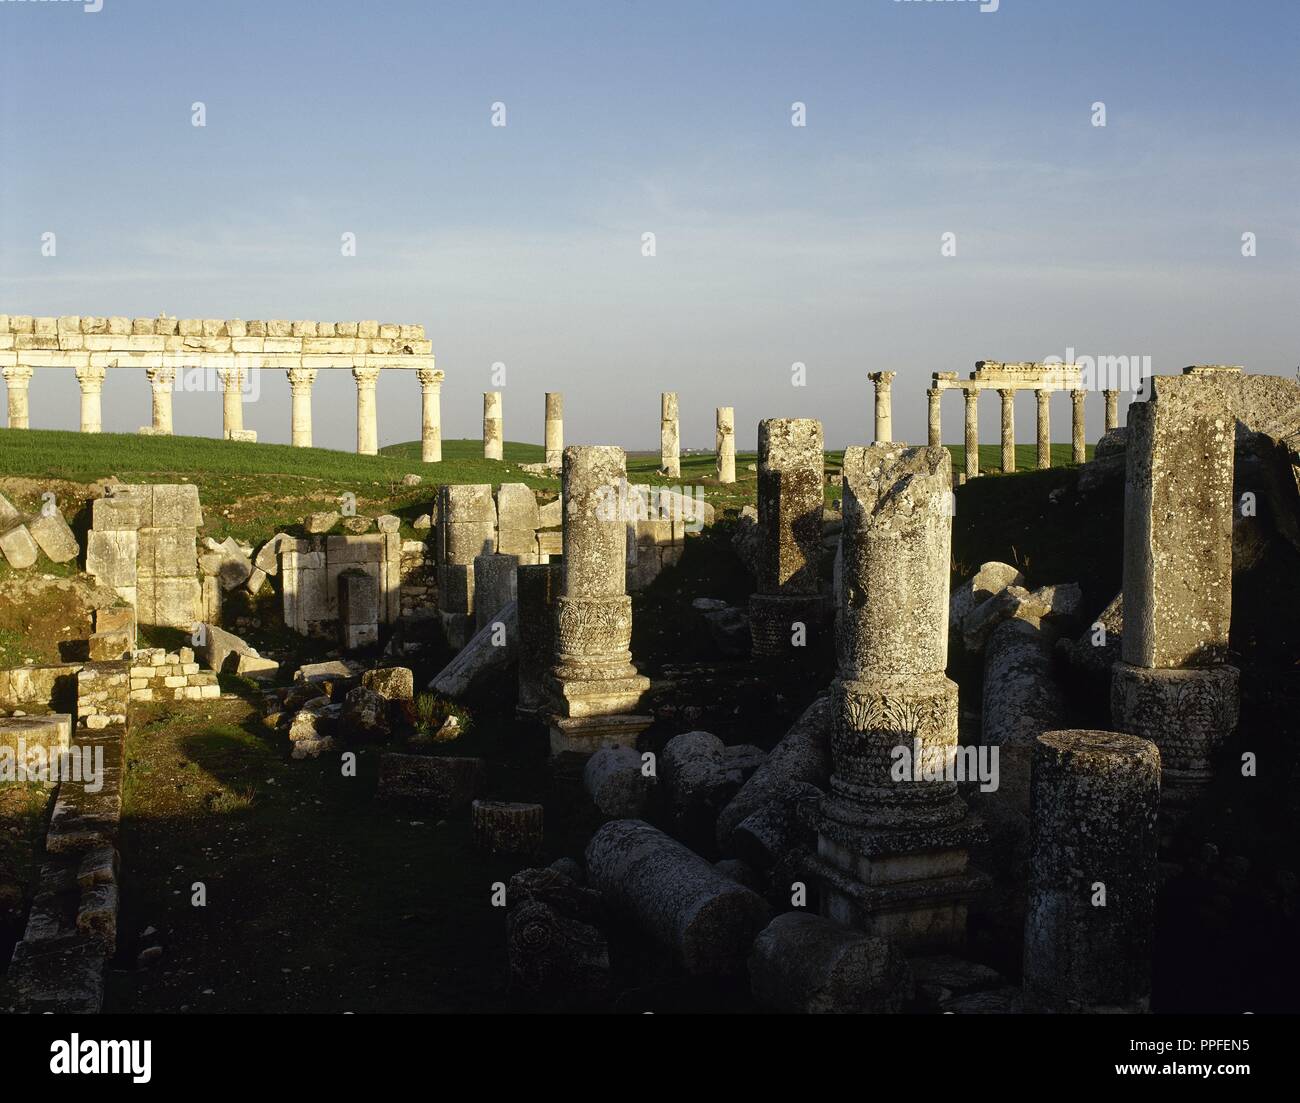 Syrien. Apamea oder Apameia (afamia). Es war eine antike griechische und römische Stadt. Die Ruinen der Tempel des Zeus Belos mit großen Kolonnade im Hintergrund. Foto vor dem syrischen Bürgerkrieg. Stockfoto